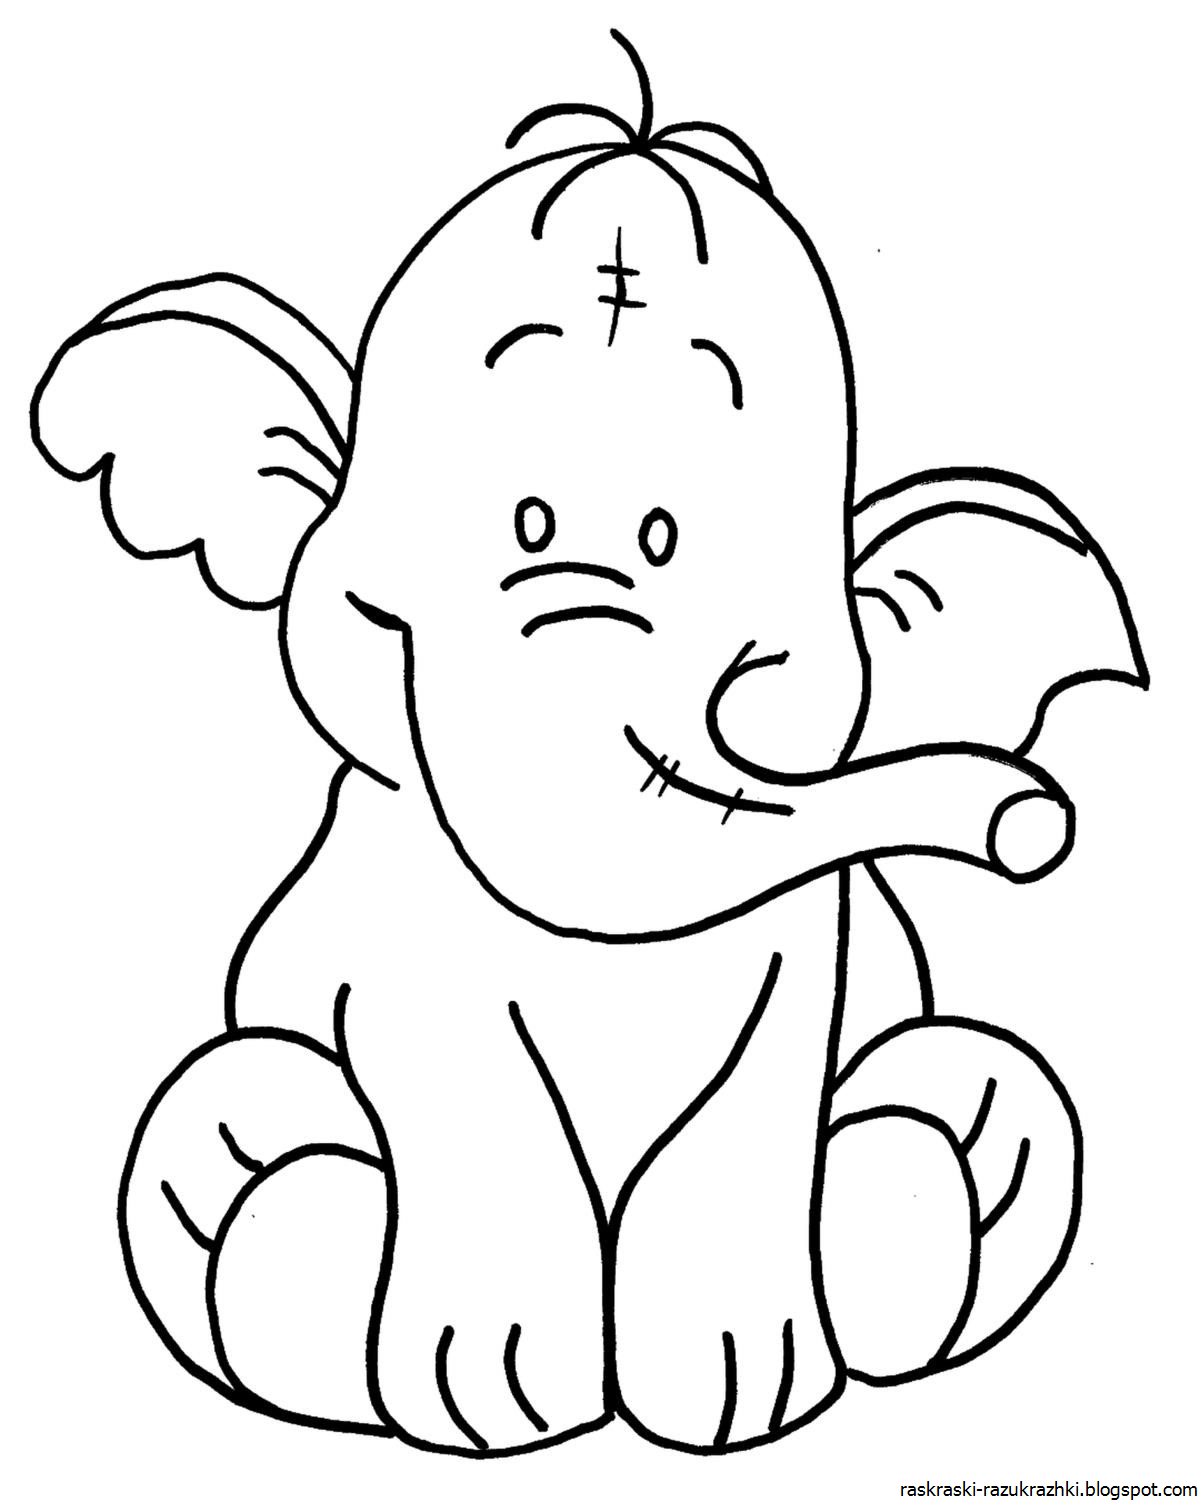 Слон раскраска. Слон раскраска для детей. Контур раскраски для детей. Слоненок раскраска для детей. Слоник распечатать